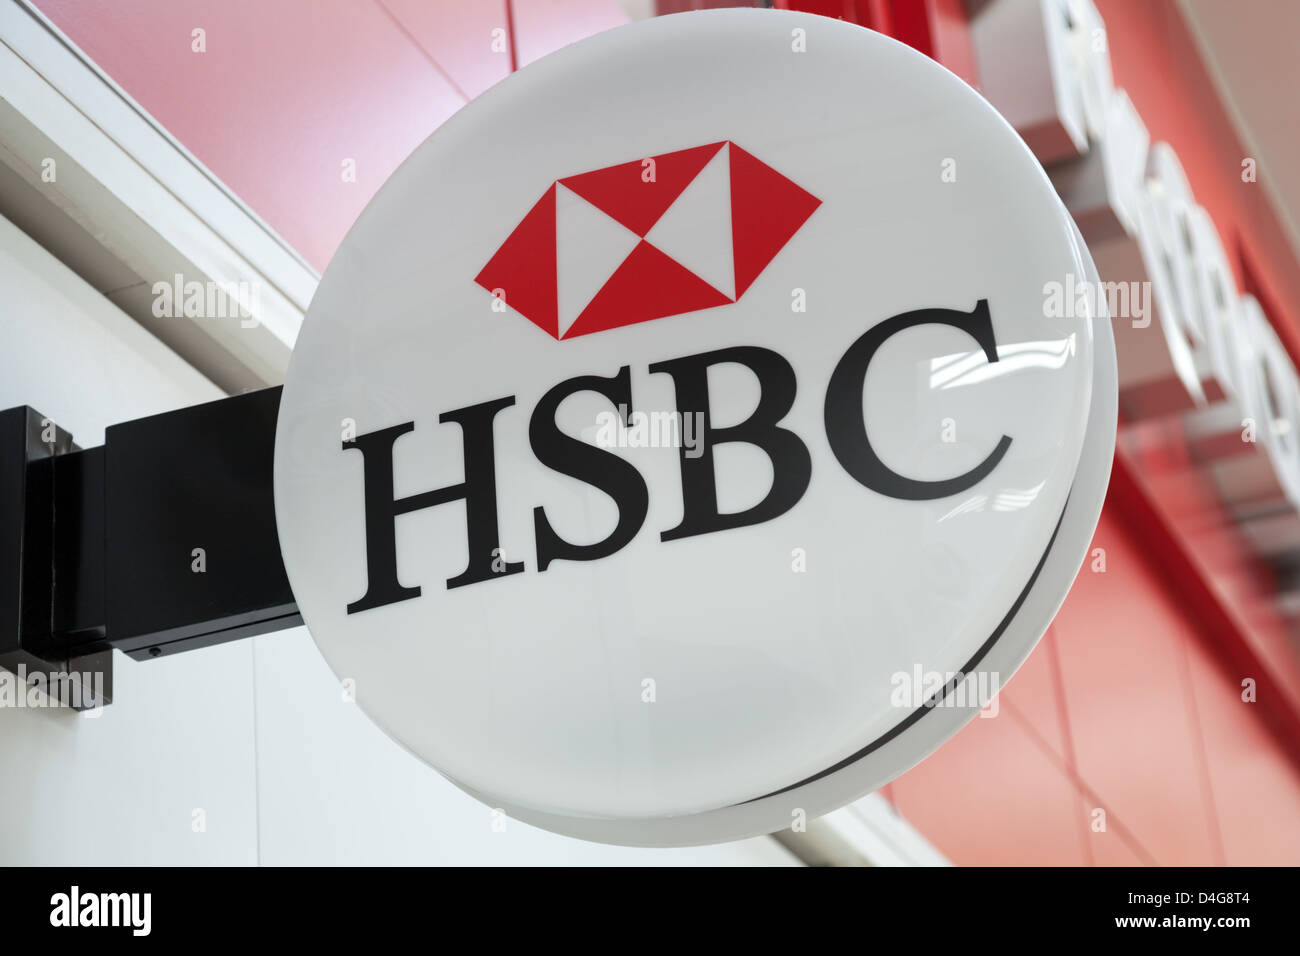 Une vue générale de l'extérieur d'un logo HSBC (Hong Kong Shanghai Banking Corporation) en direction de Basingstoke, Hampshire. Banque D'Images